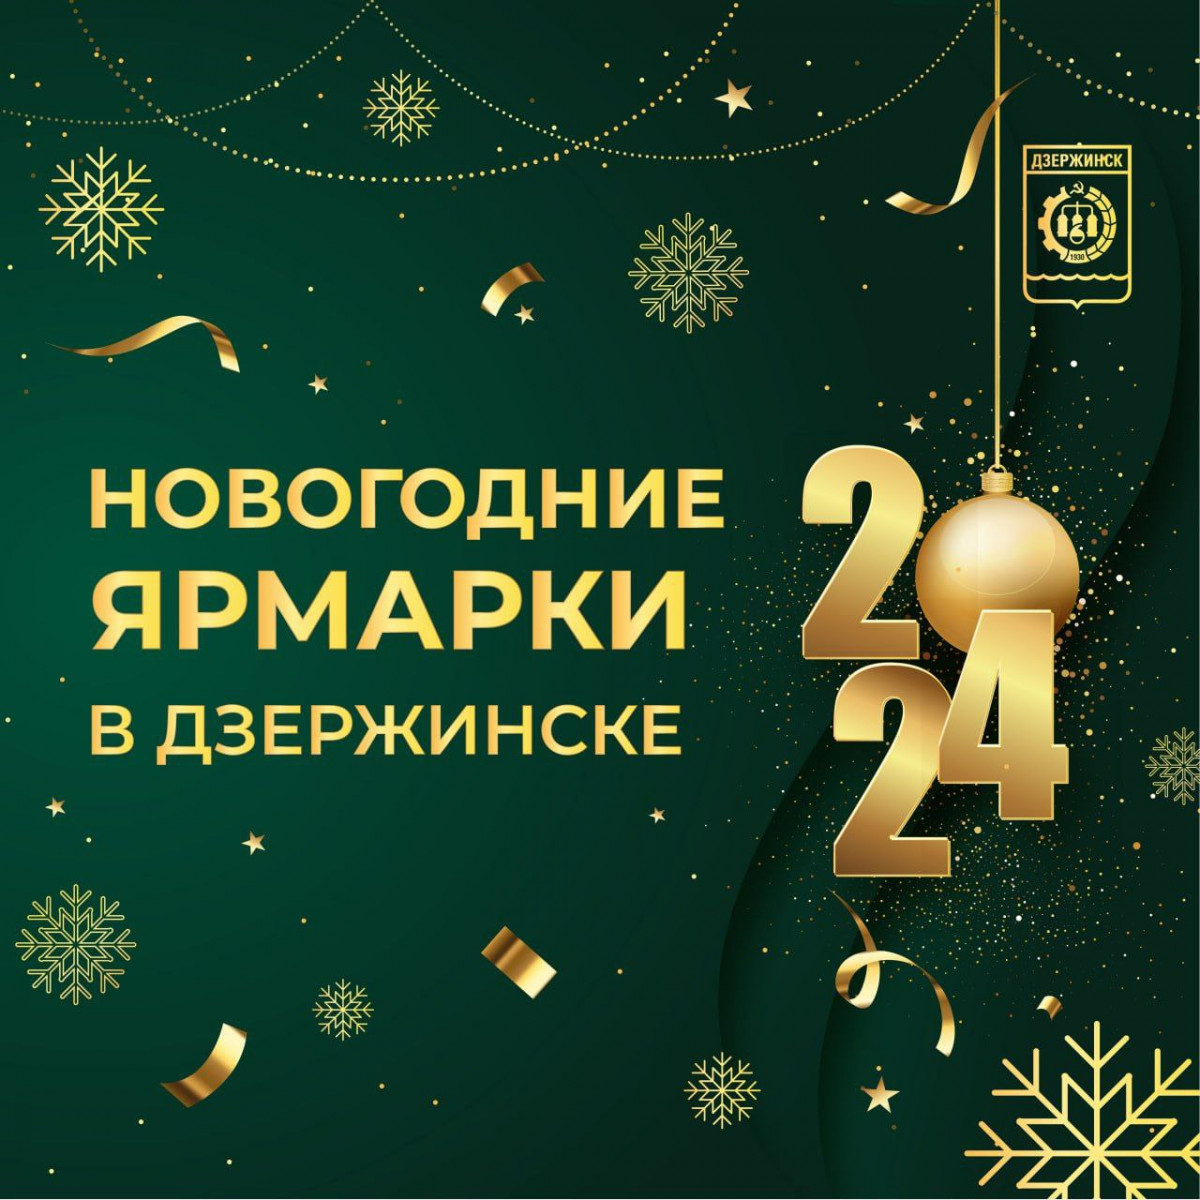 Новогодние ярмарки открылись в Дзержинске